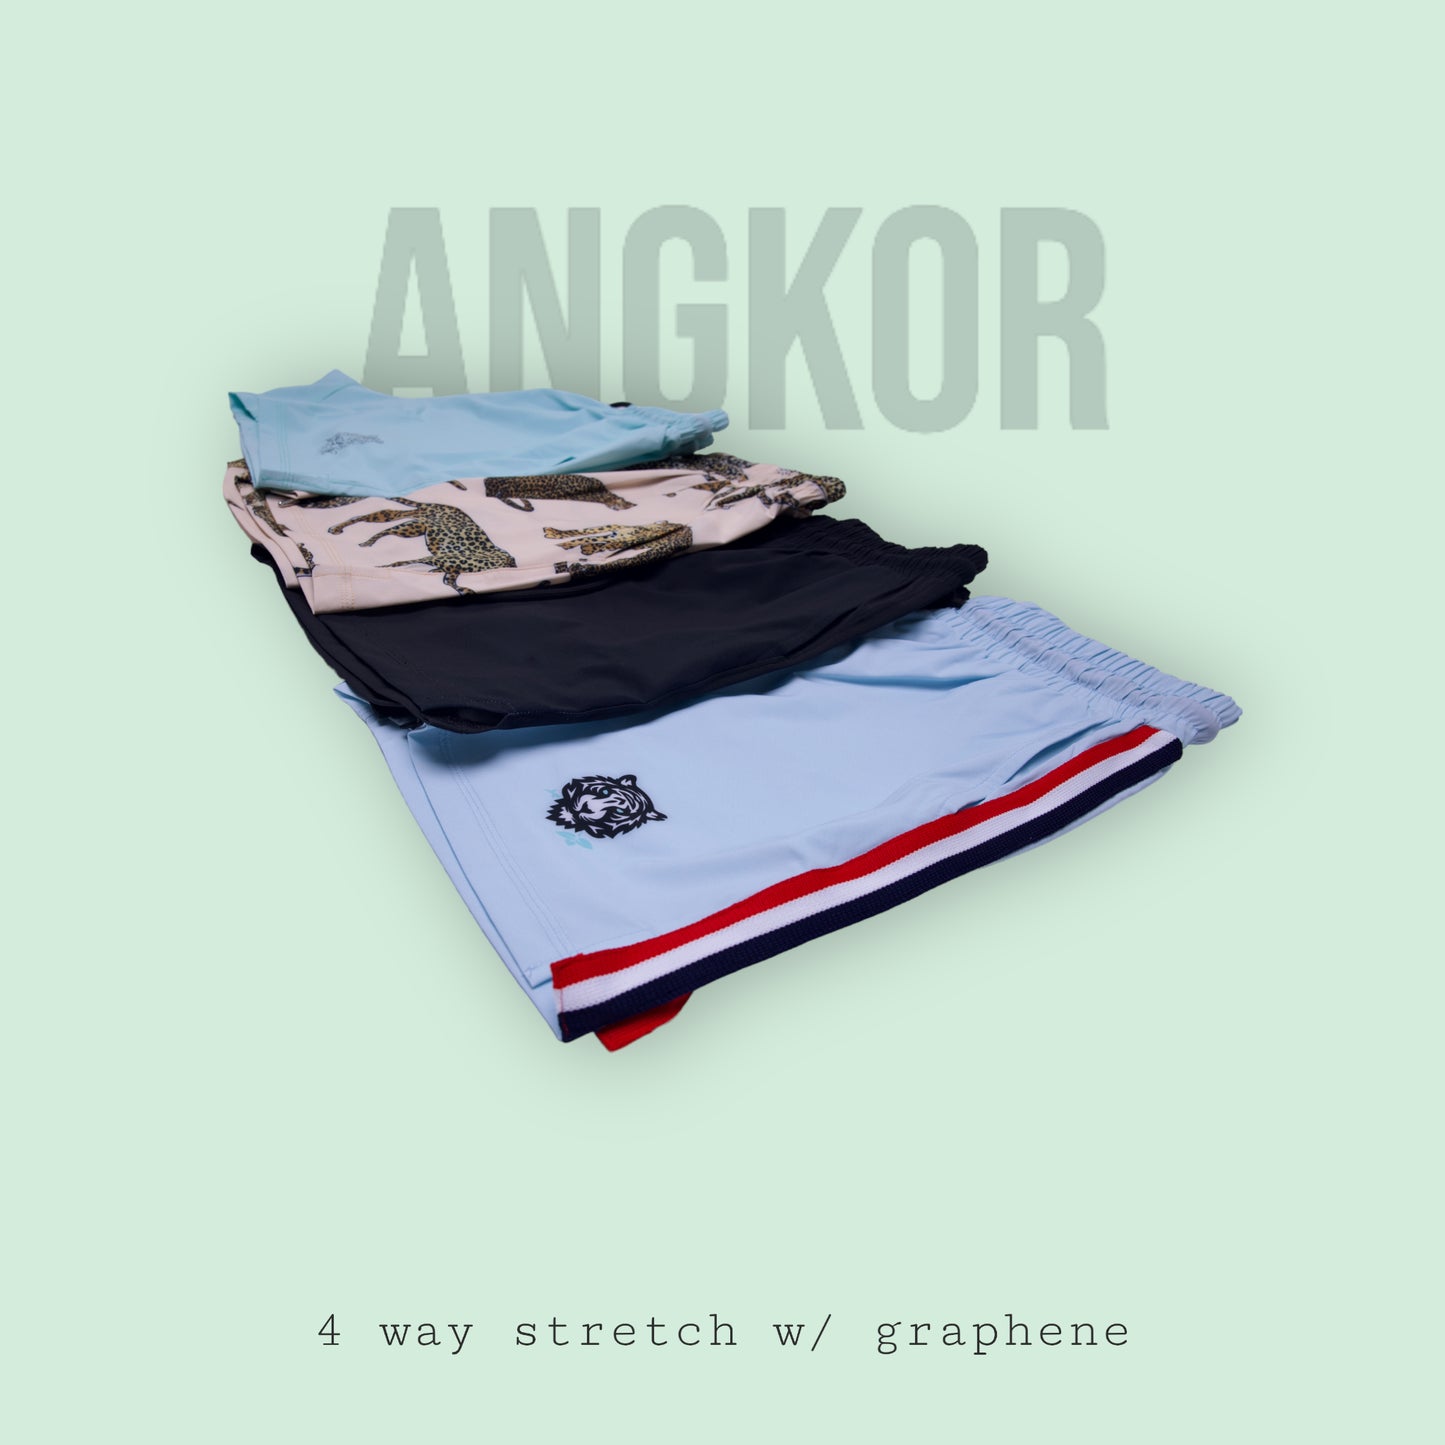 The Angkor Short